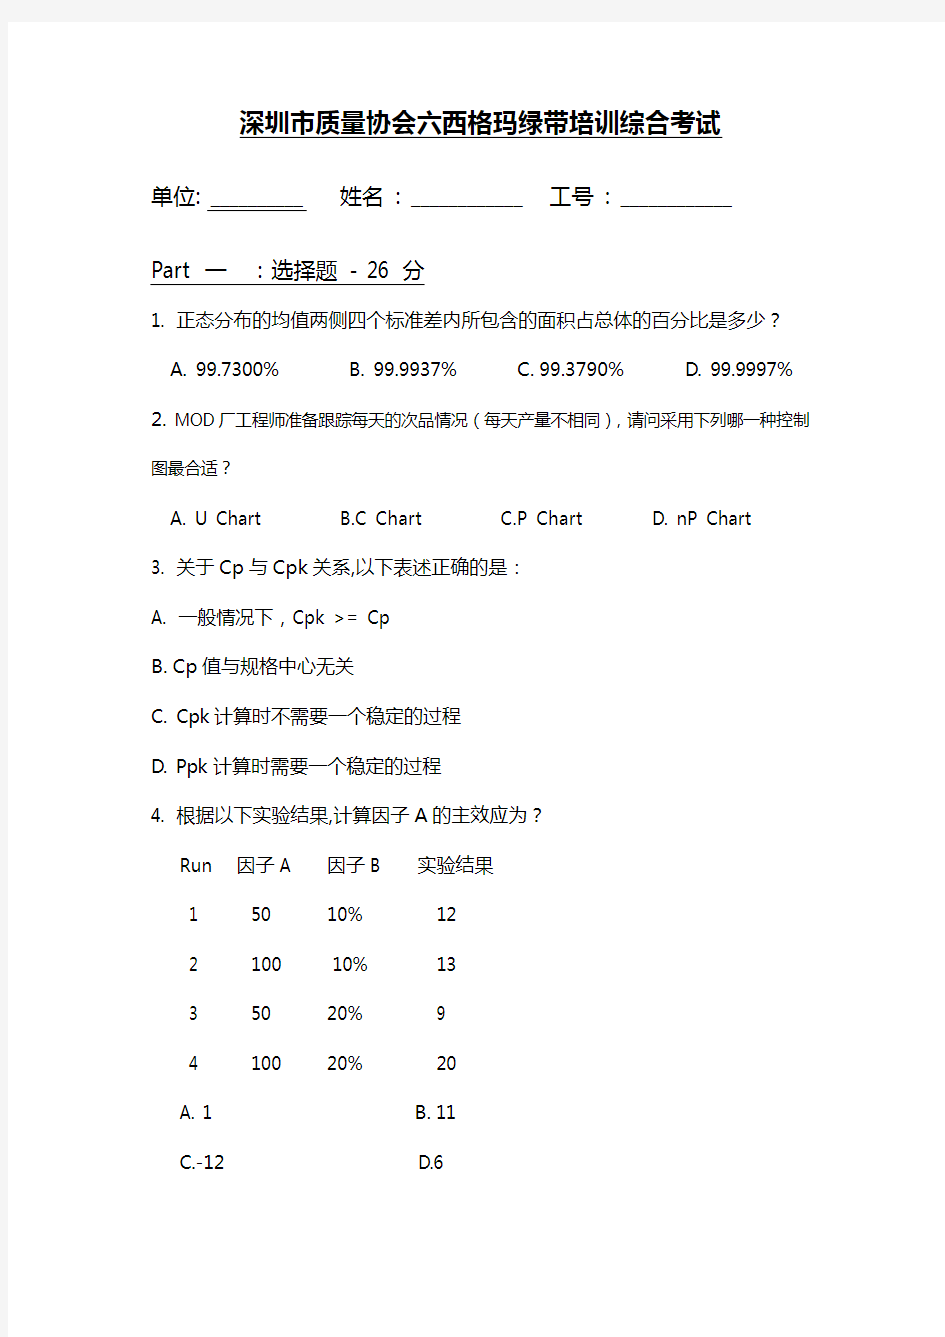 深圳市质量协会六西格玛绿带培训综合考试